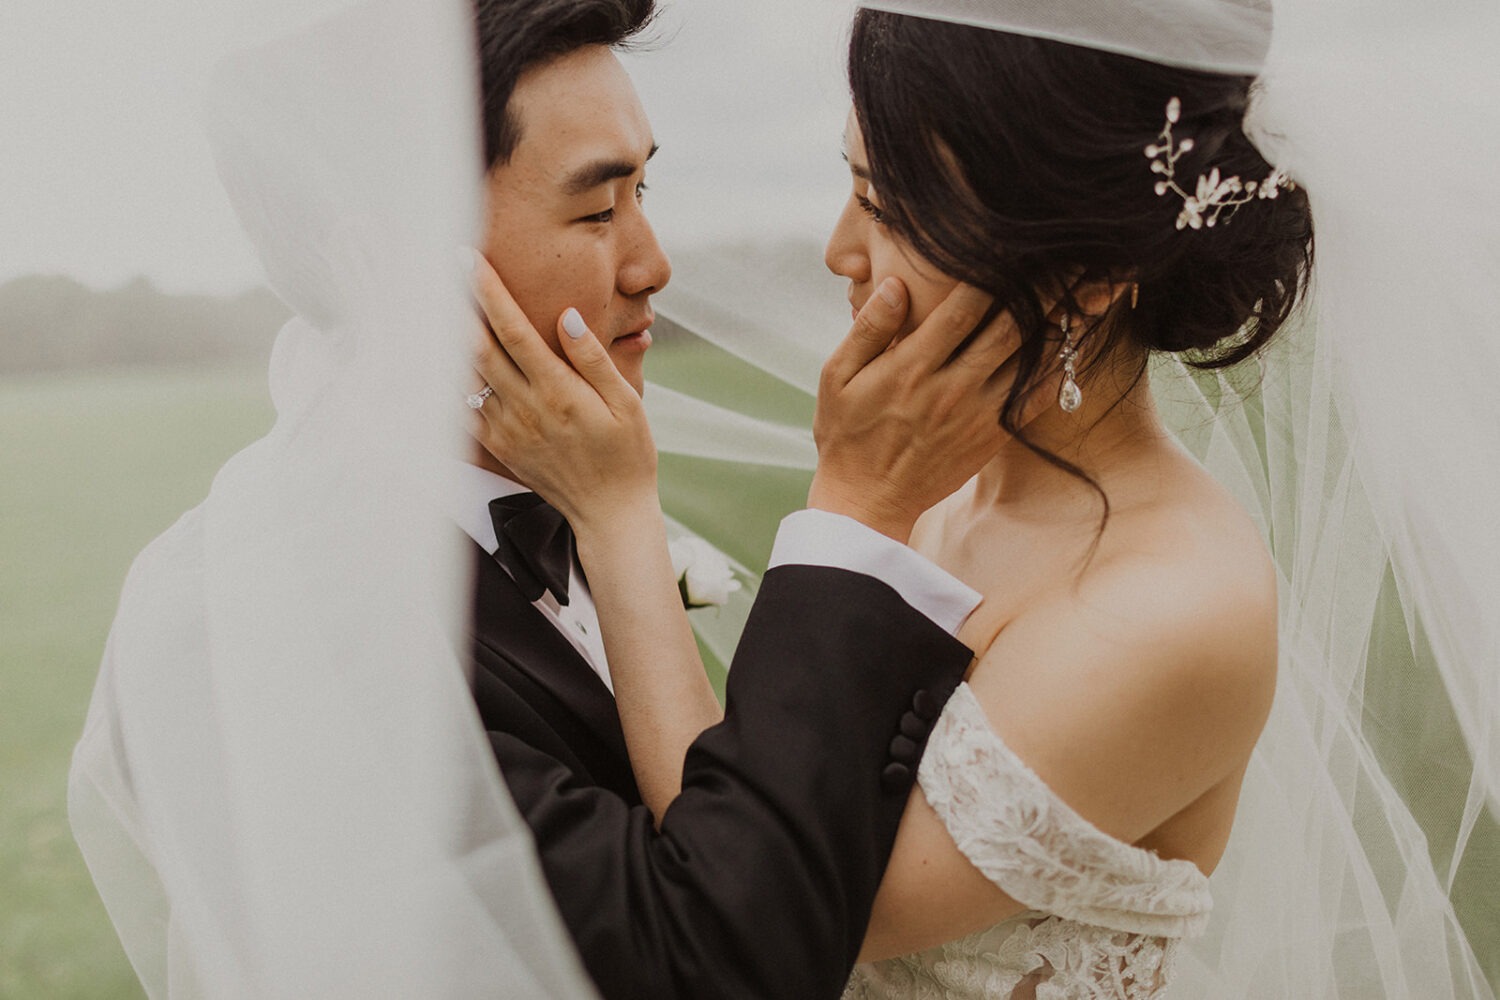 couple embraces under wedding veil 